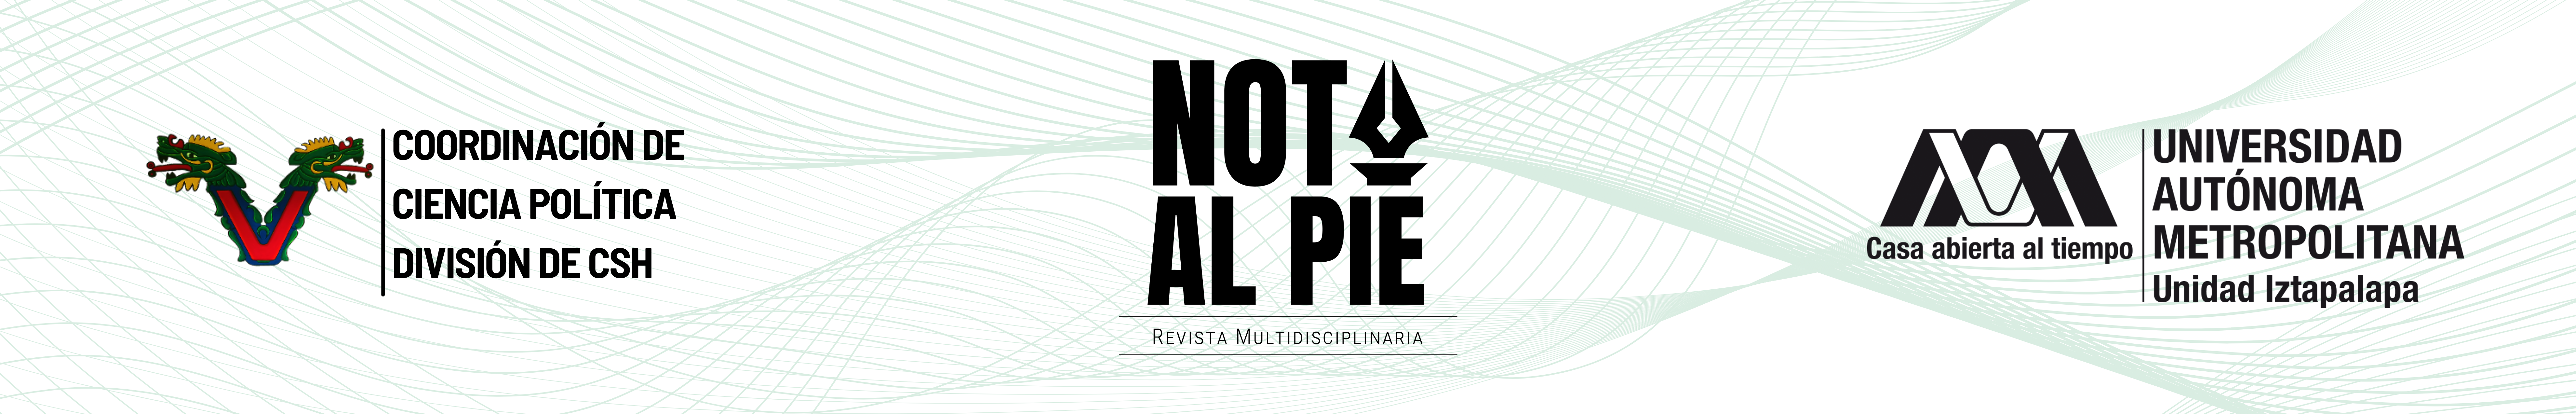 Coordinación de Ciencia Política/Revista Nota al Pie - Revista multidisciplinaria/UAM - Iztapalapa